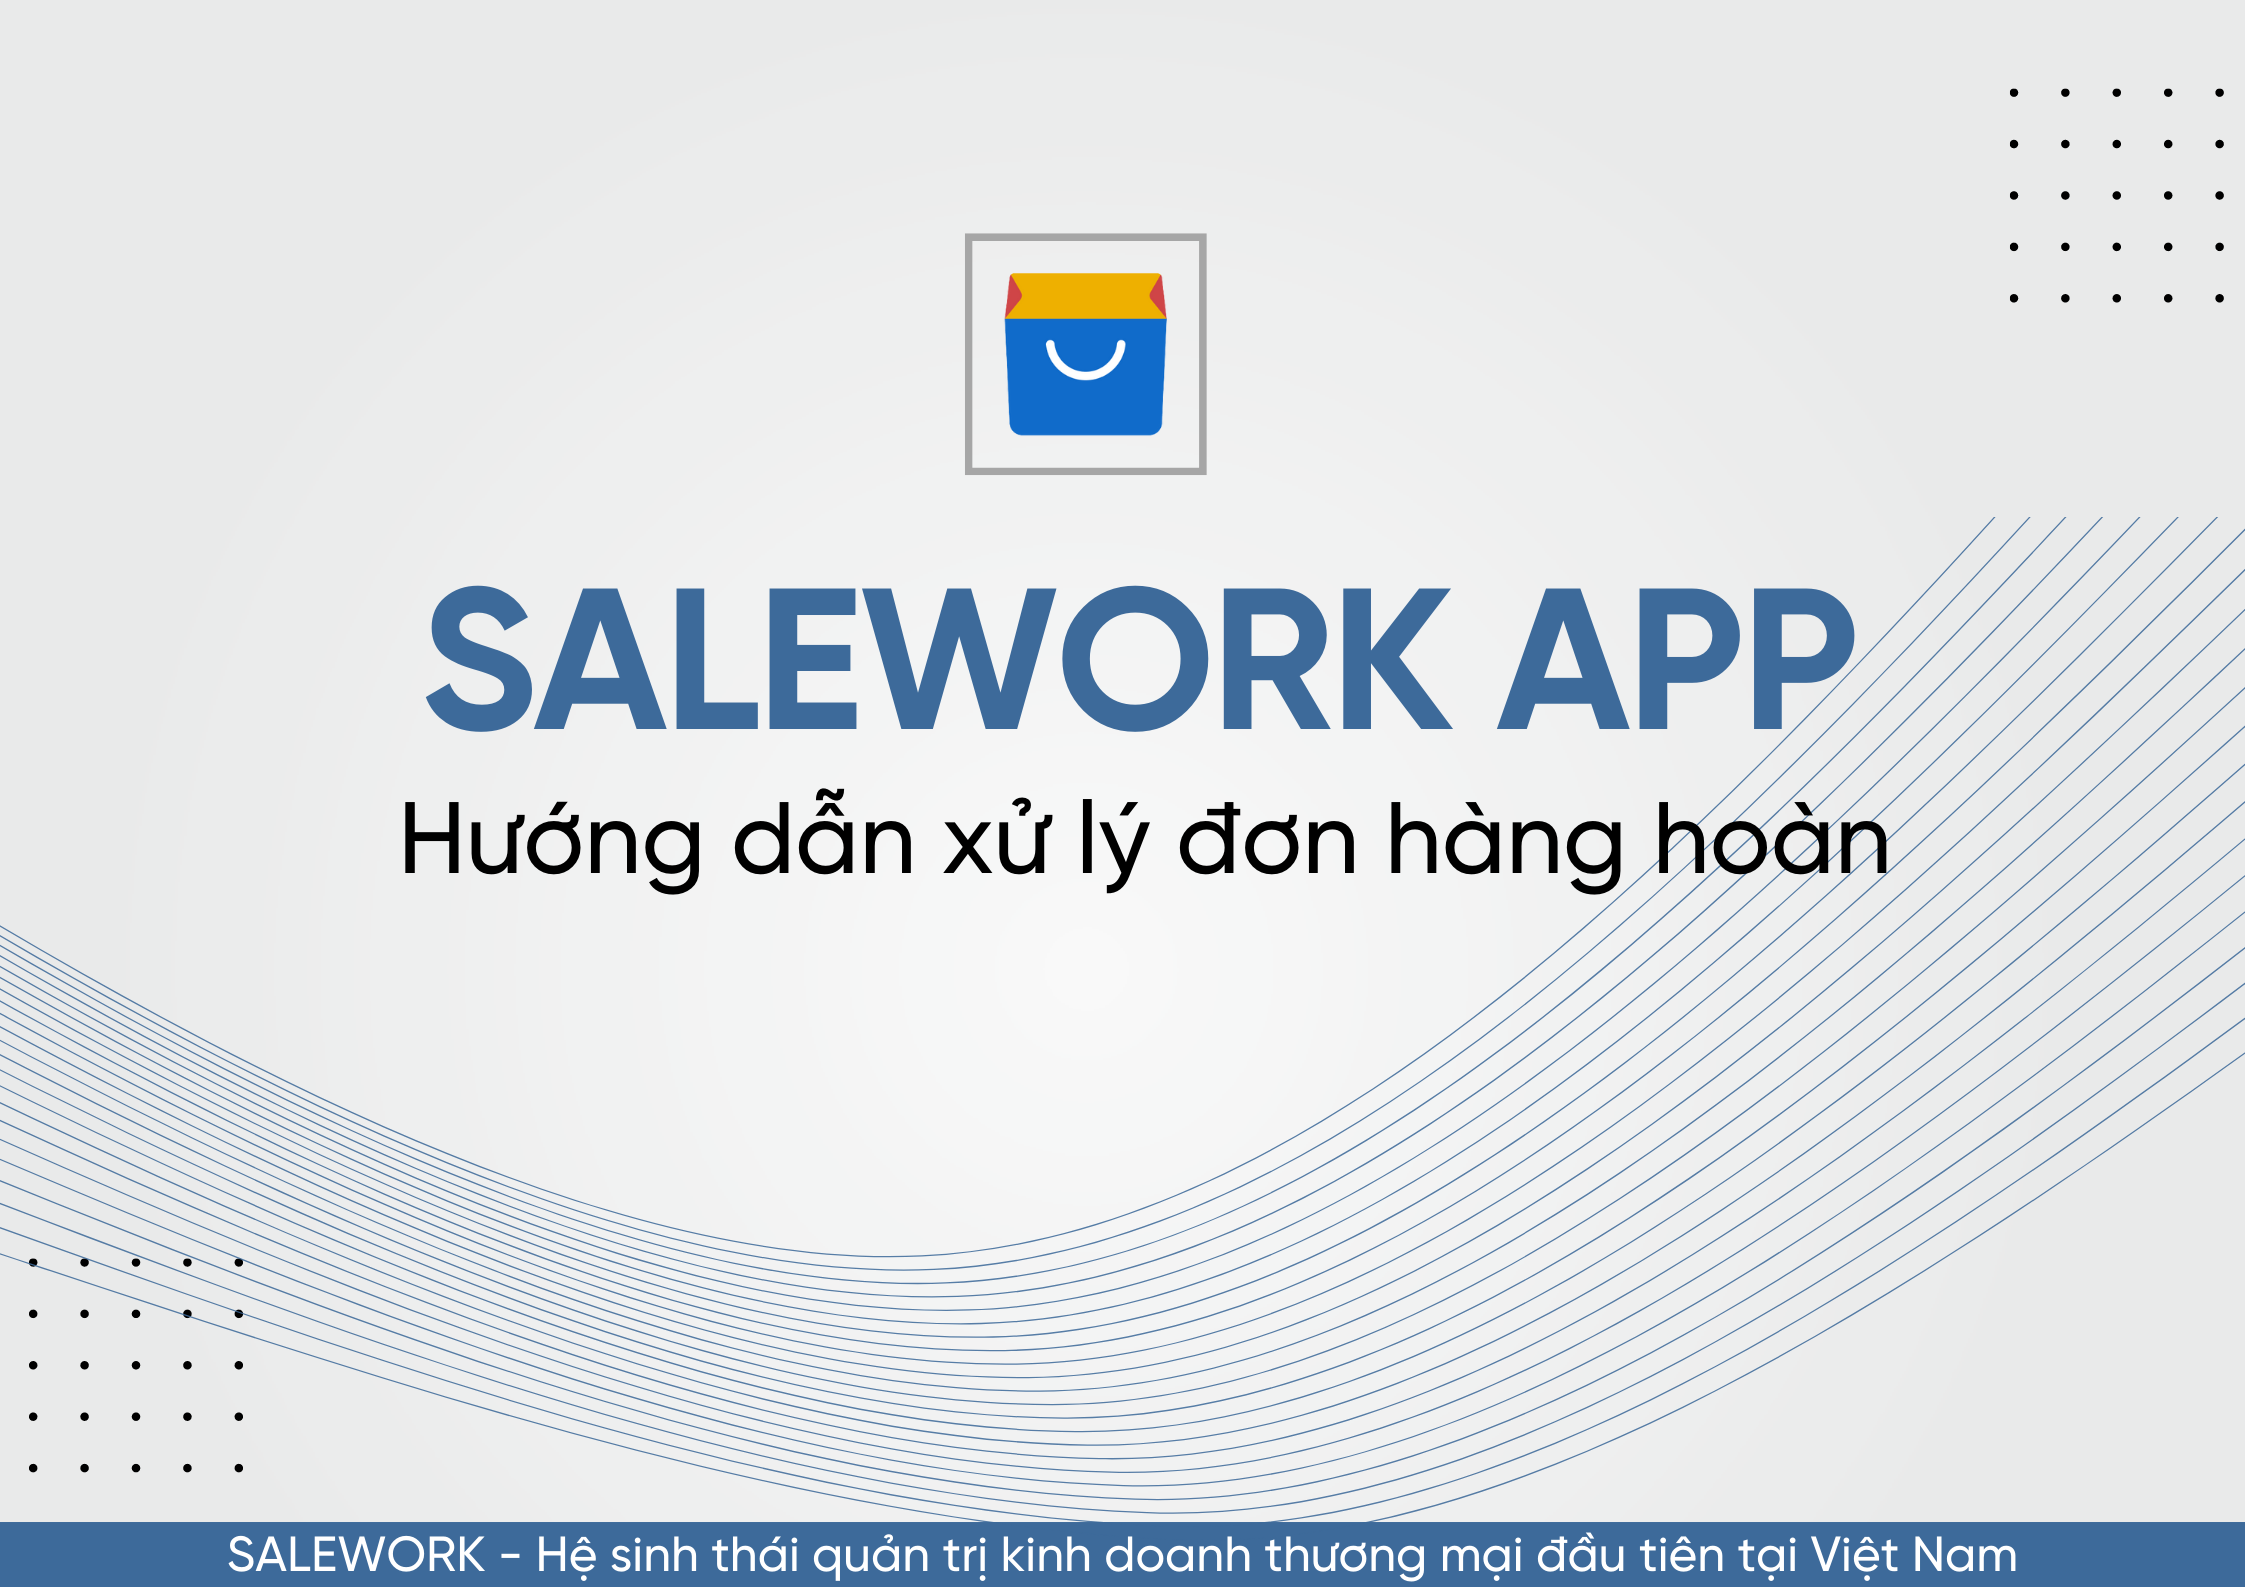 Hướng dẫn xử lý đơn hàng hoàn trên Salework mobile - 11